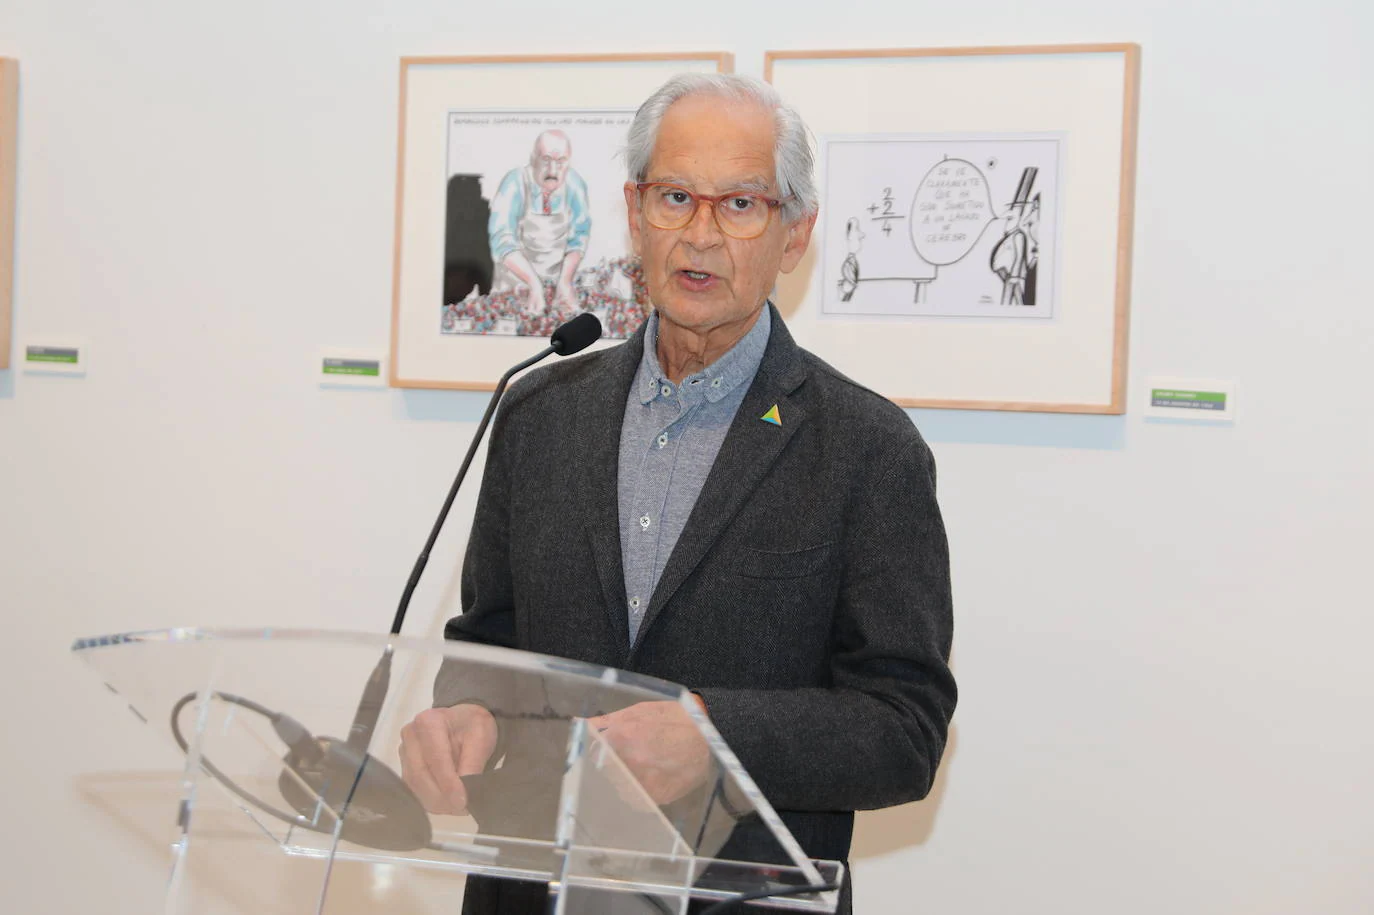 El dibujante y humorista gráfico, Andrés Rábago García, conocido como 'El Roto', interviene en la inauguración de 'Sobre la libertar de expresión'. EP